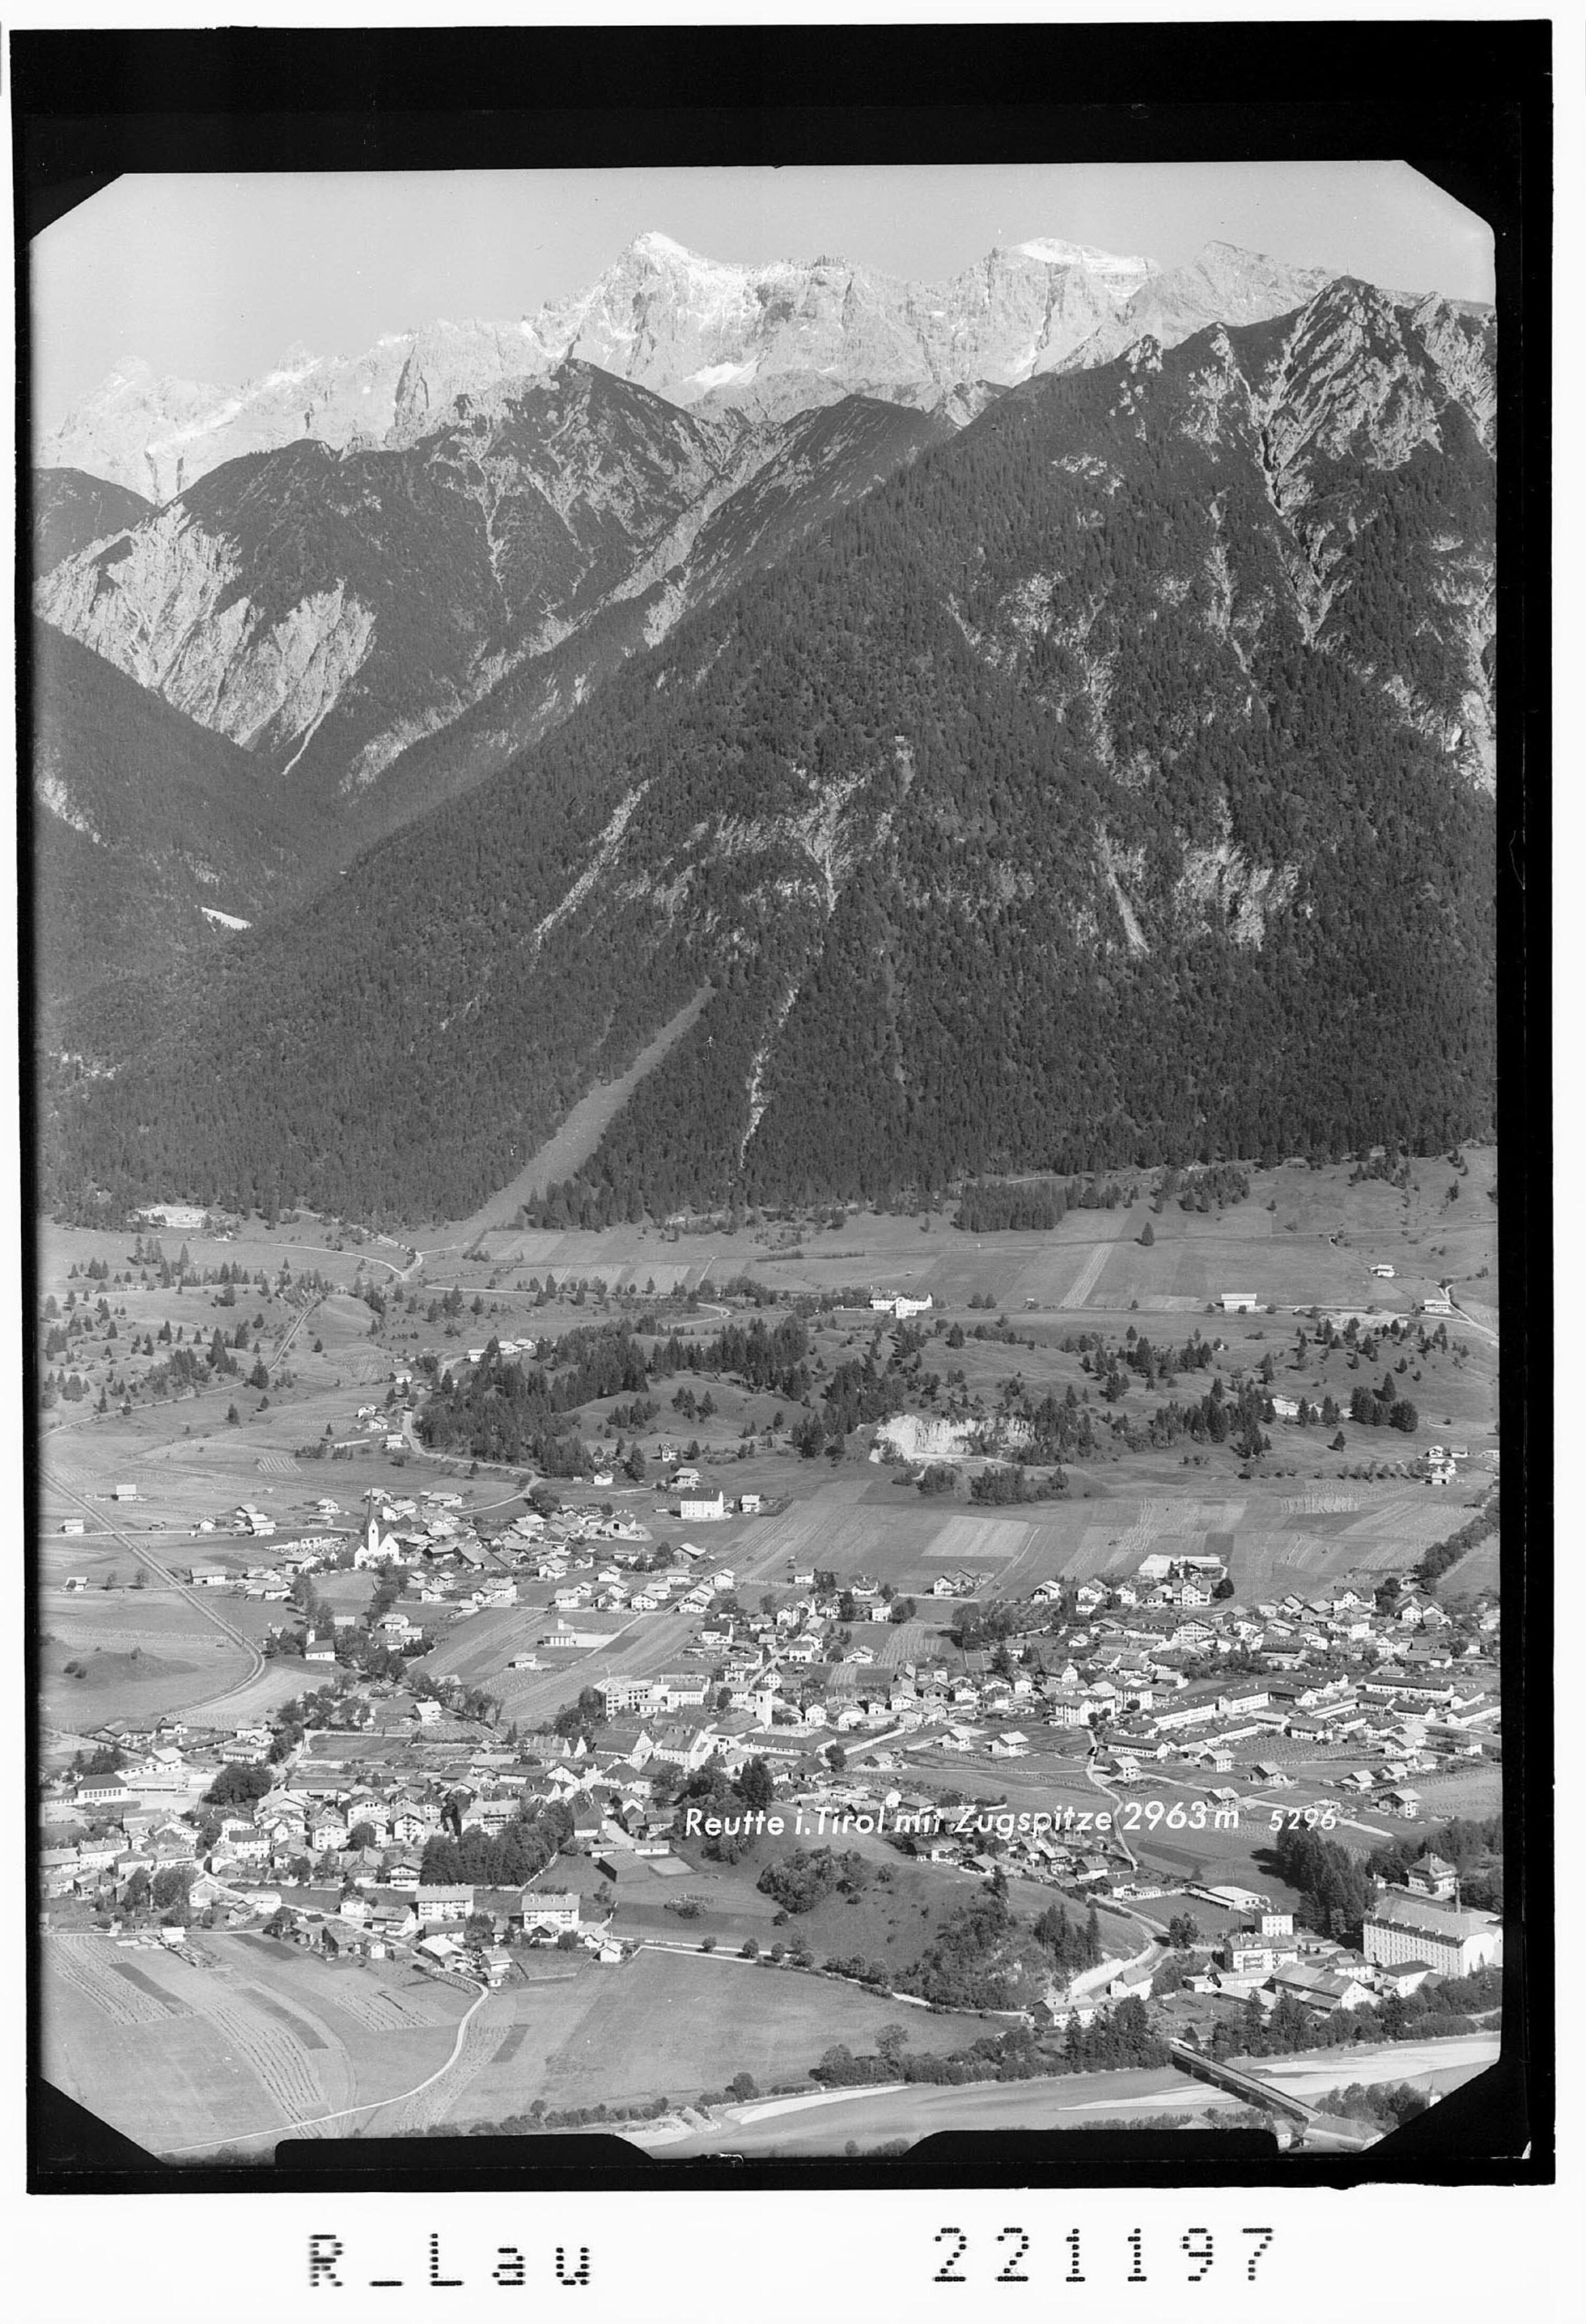 Reutte in Tirol gegen Zugspitze 2963 m></div>


    <hr>
    <div class=